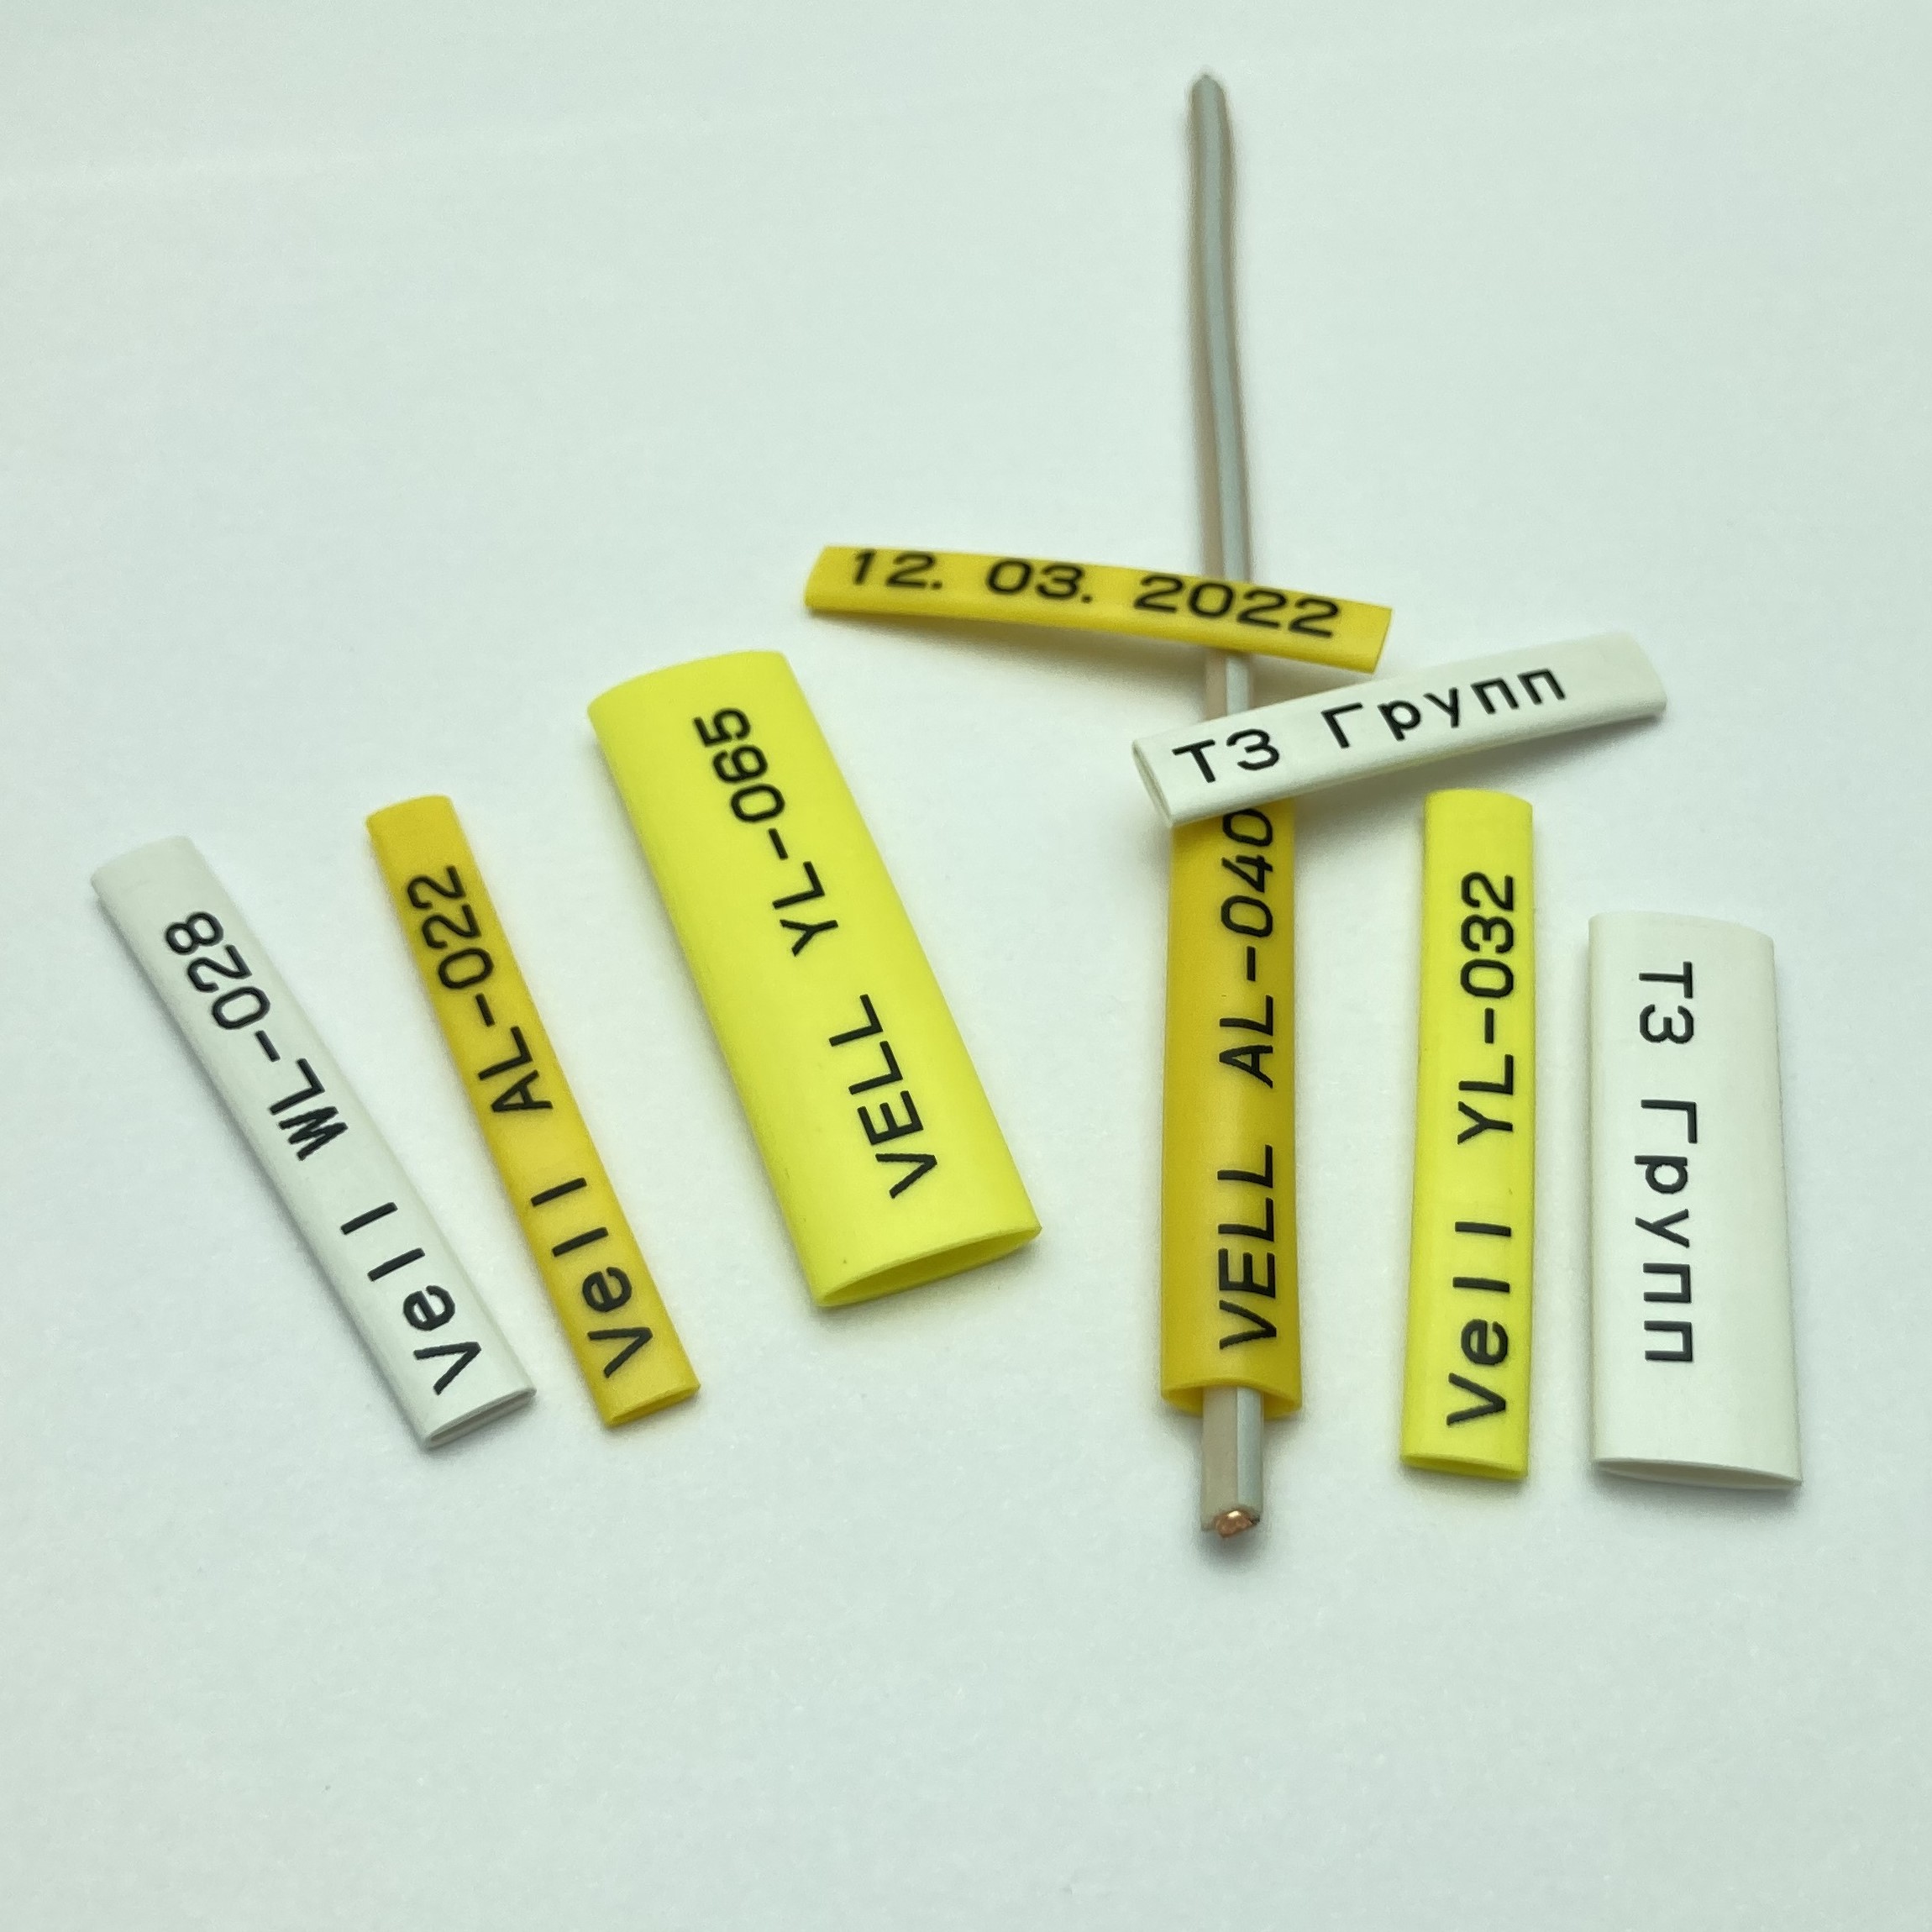 Фото Профиль ПВХ овальный Vell AL-048 для маркировки проводов, Ø 4,8 мм, 200 метров, янтарно-желтый, аналог Partex PO-08 (самозатухающий) {590398} (3)